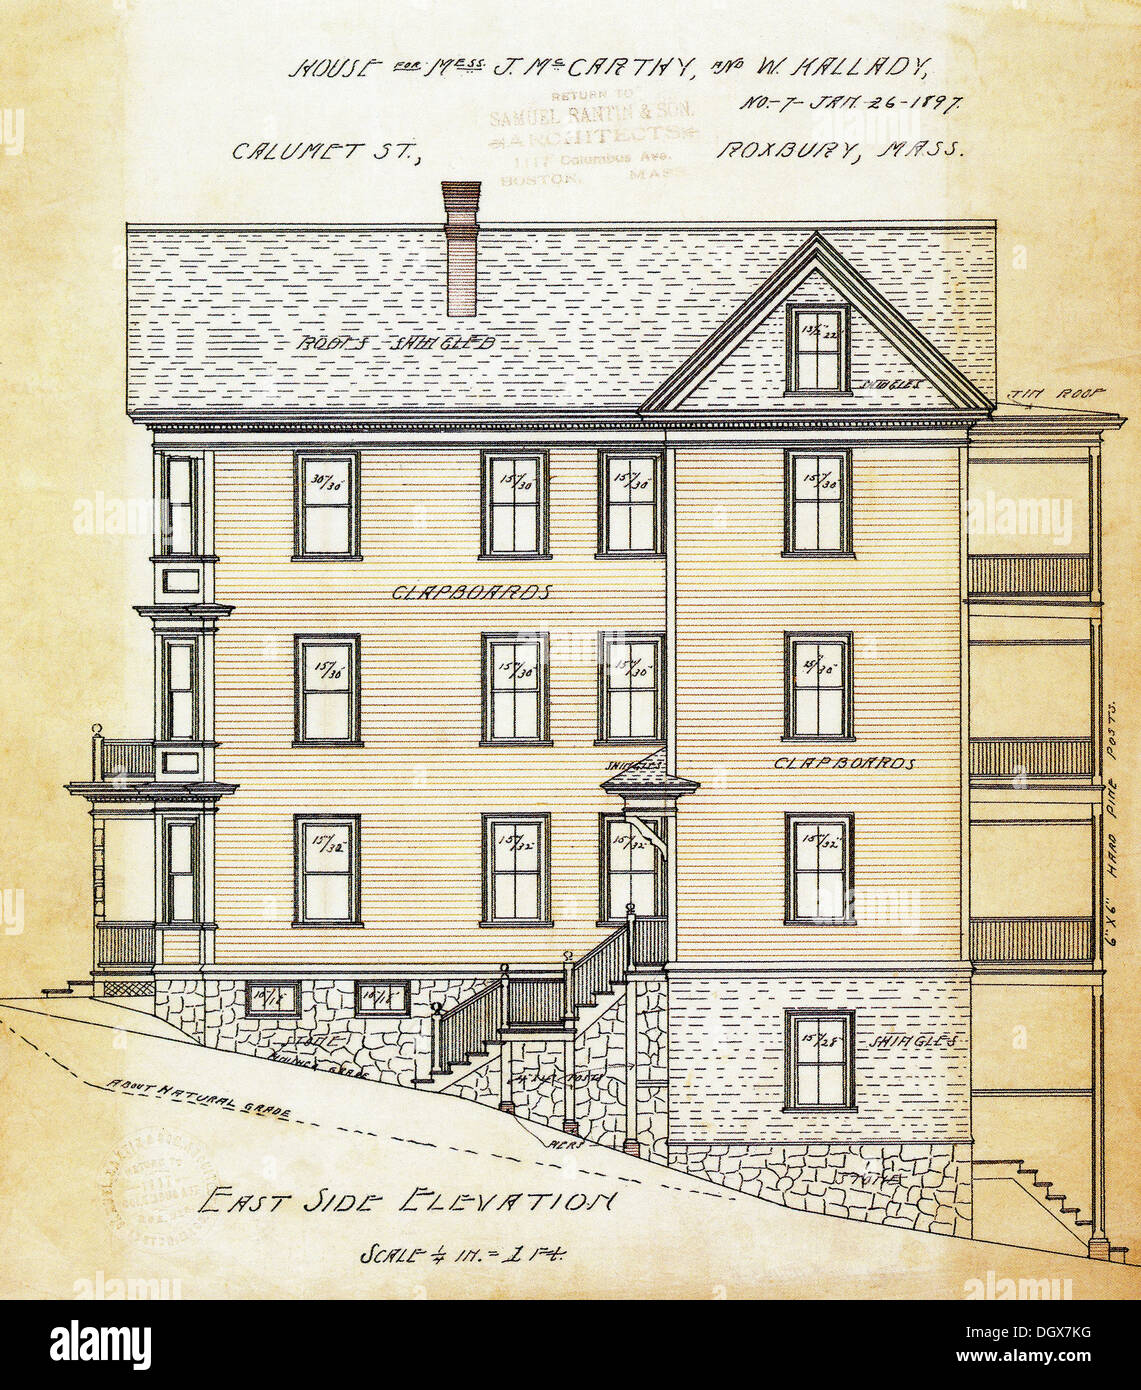 Plan de maison historique, Boston, Massachusetts, USA, 1897 Banque D'Images